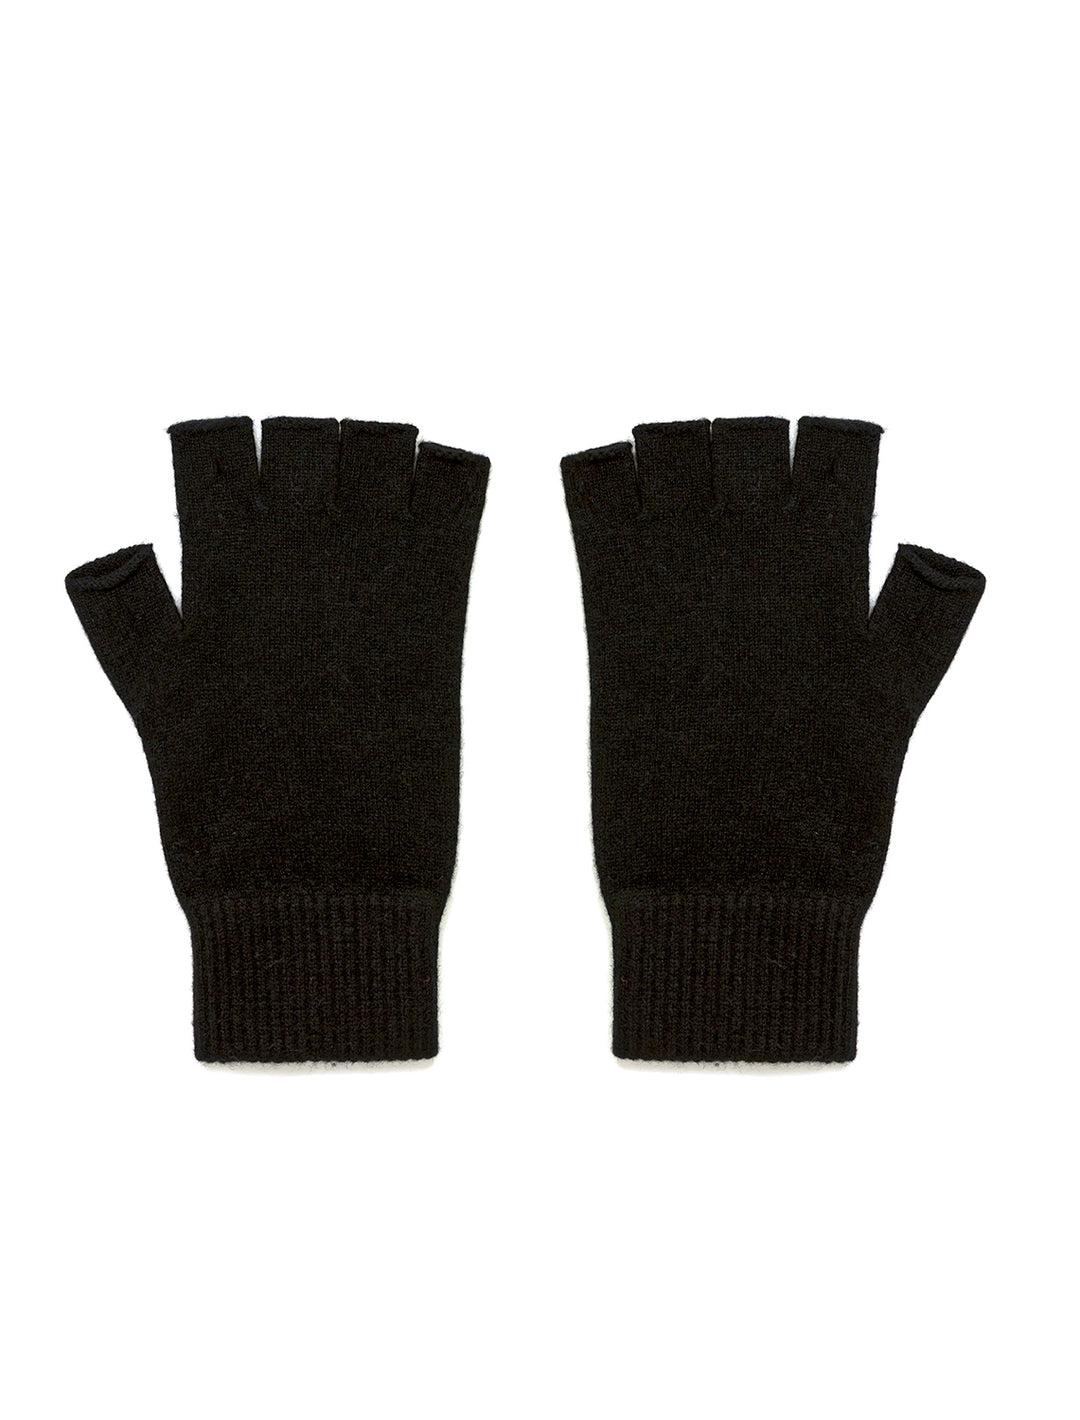 Jumper 1234's fingerless gloves in black.